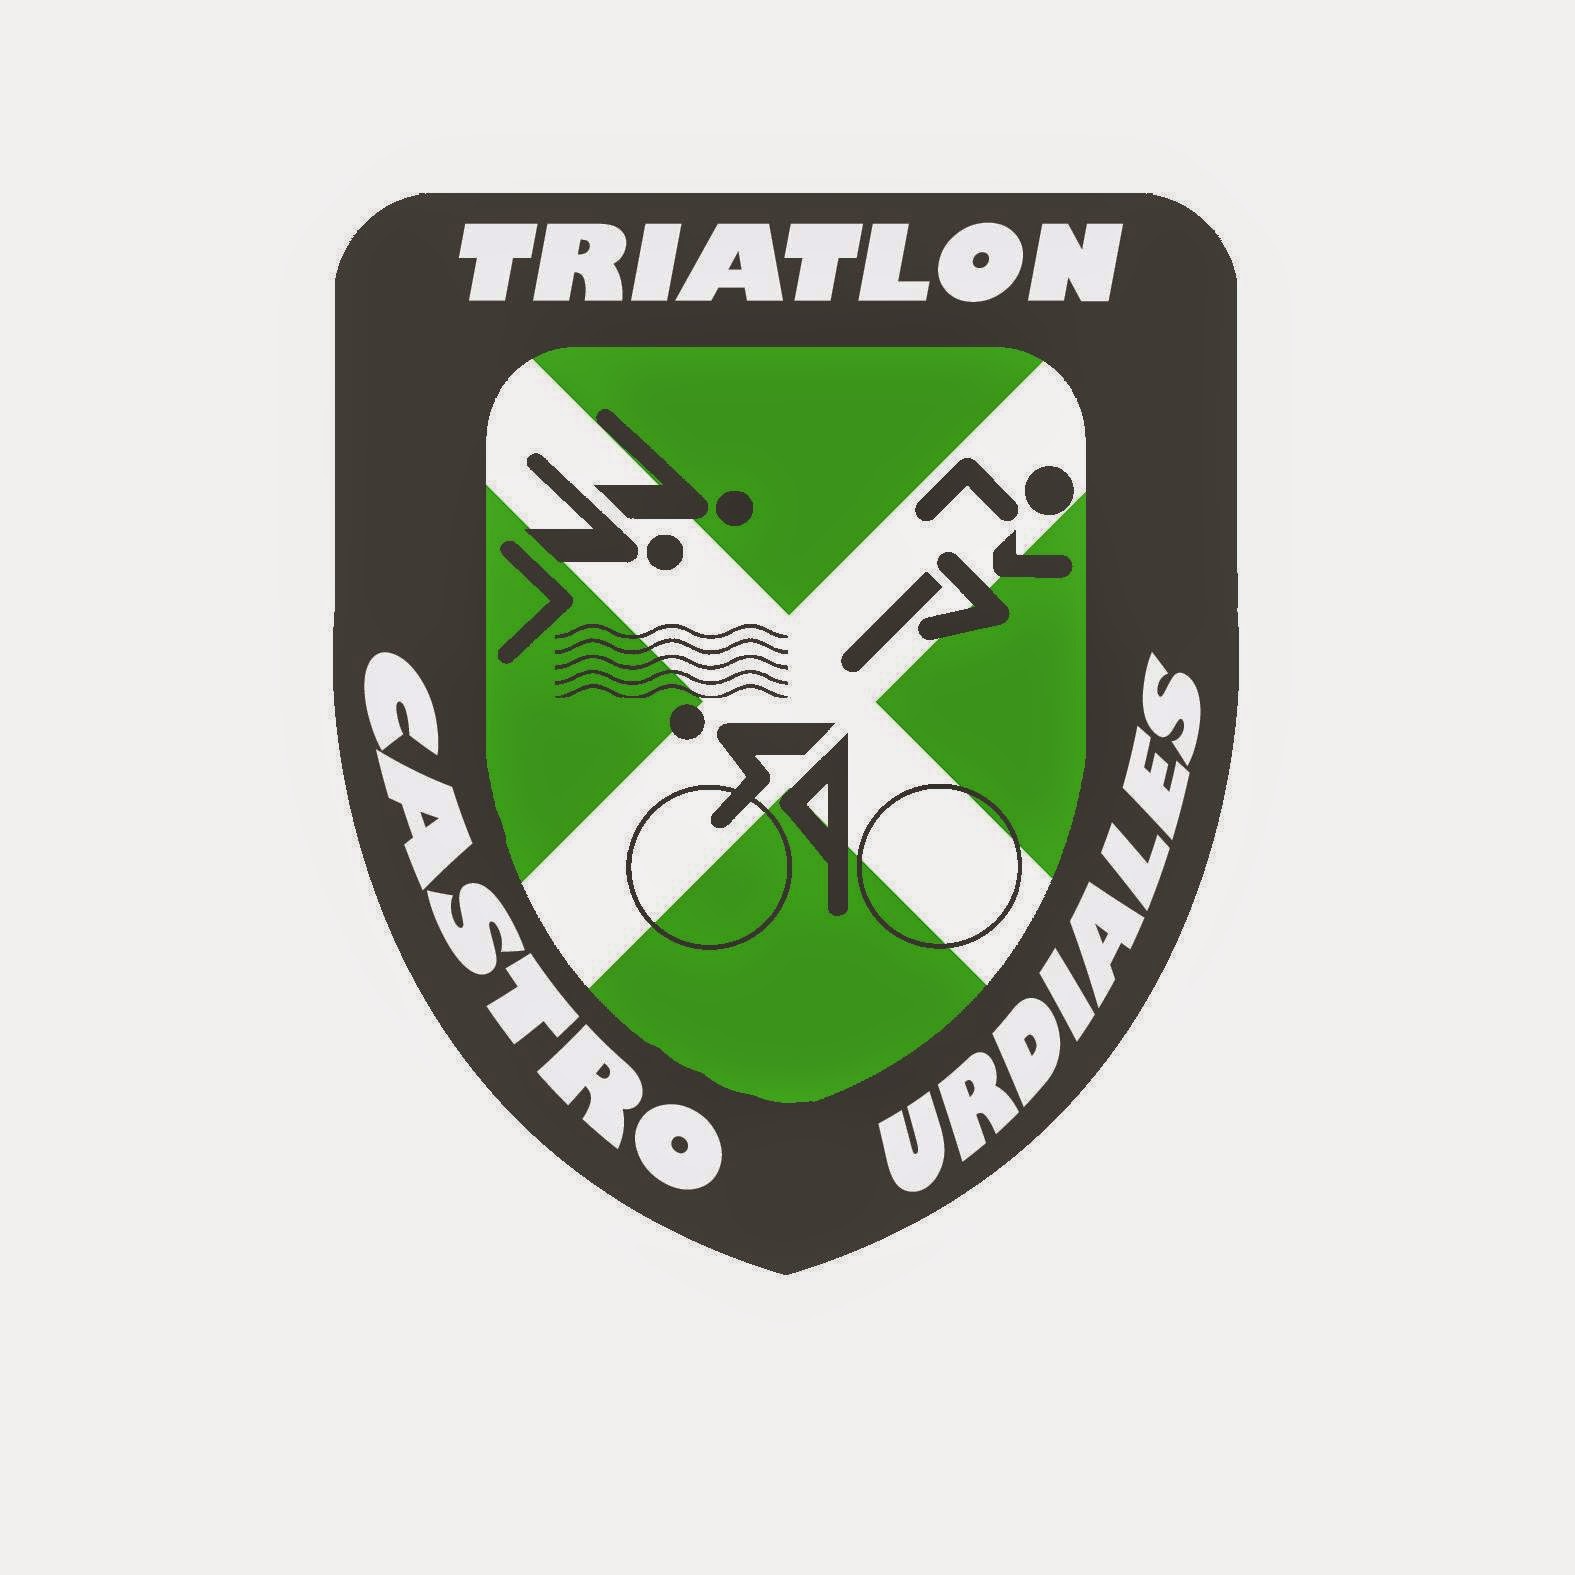 Club Triatlon Castro Urdiales